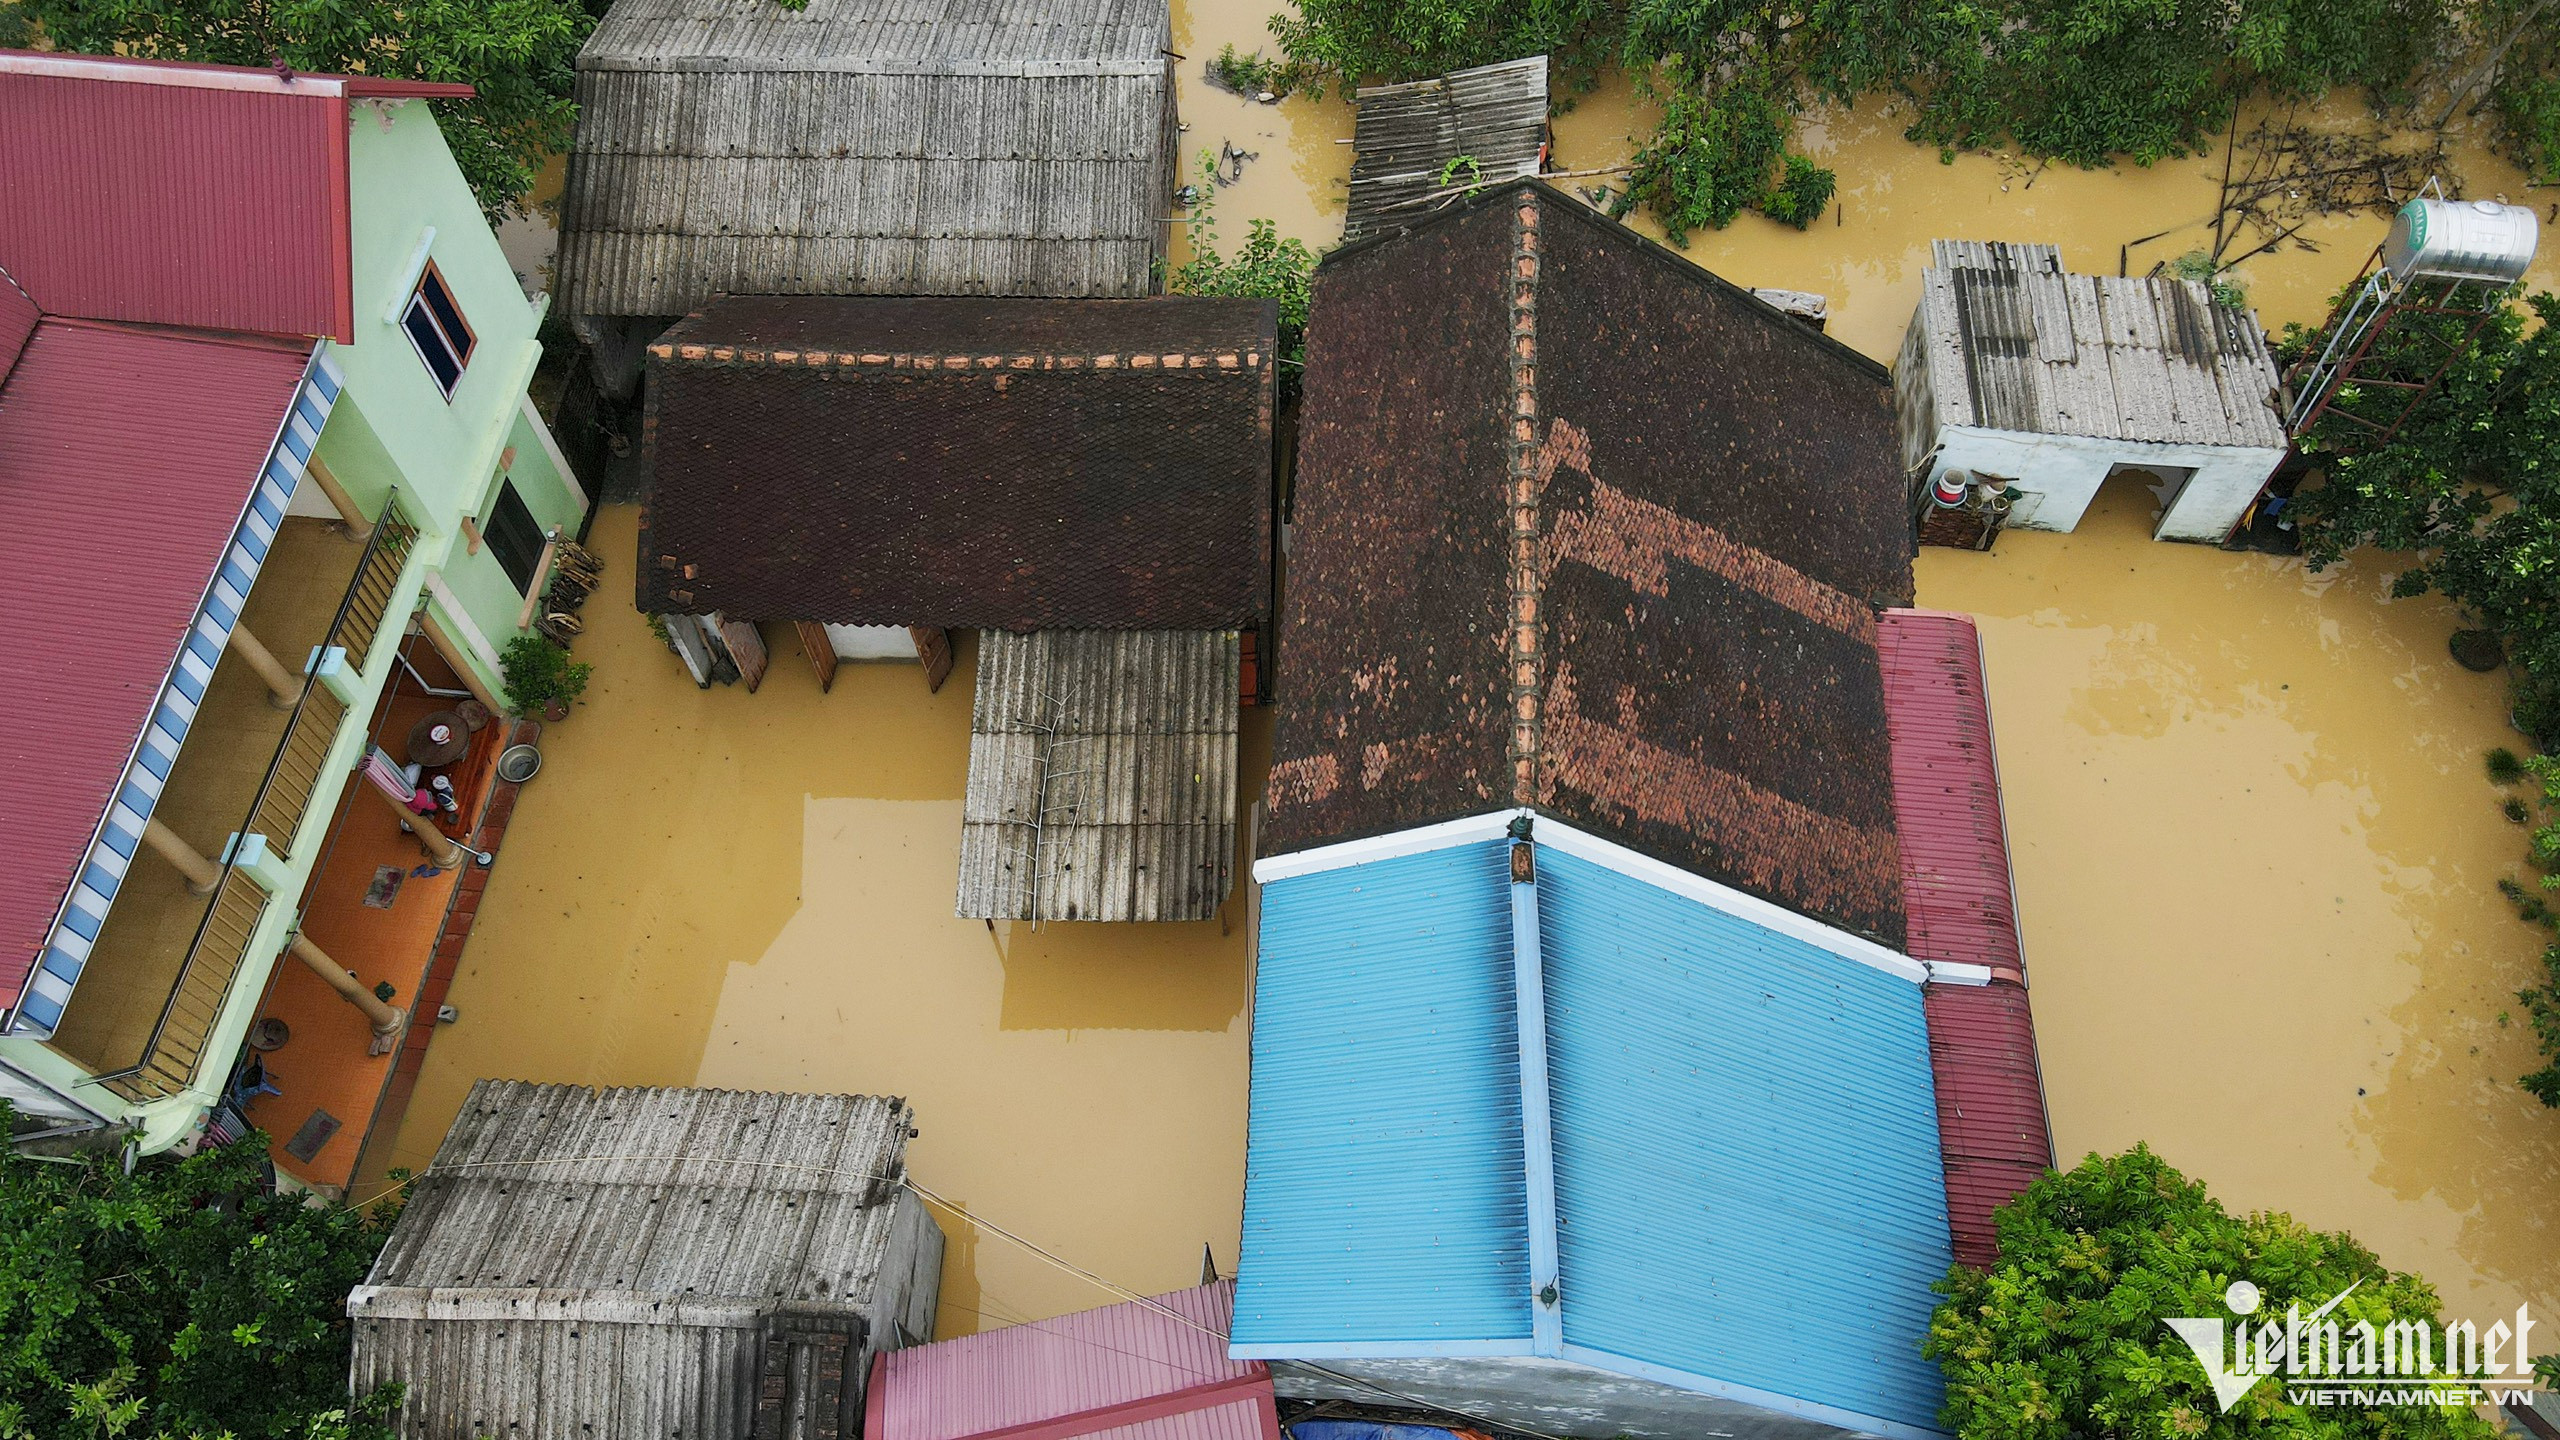 Dân ngoại thành Hà Nội chỉ còn cách nhìn của cải chìm trong làn nước lũ